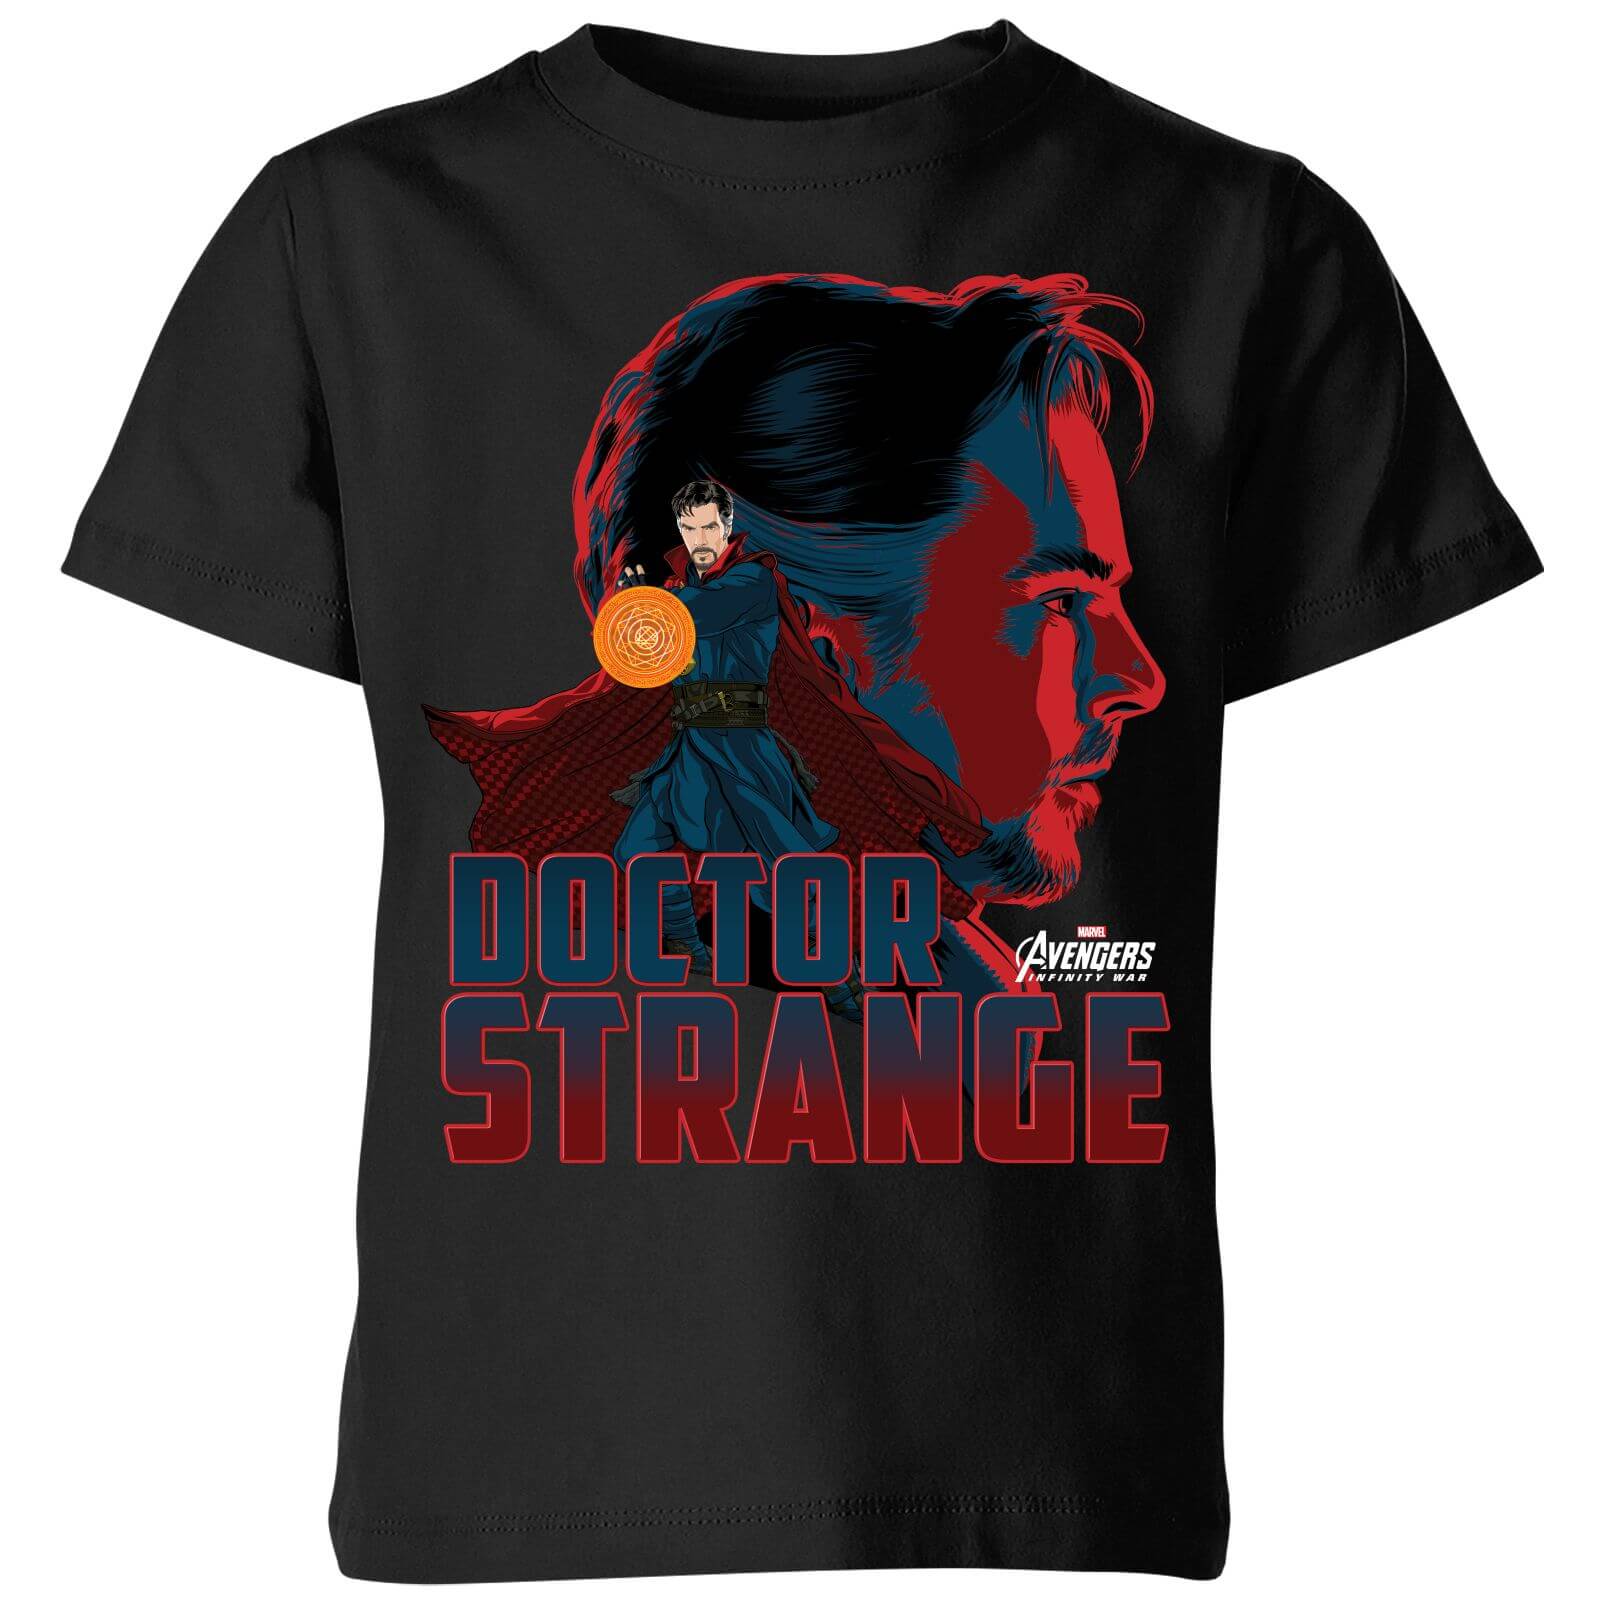 Marvel Avengers Doctor Strange Kids' T-Shirt - Black - 5-6 Years - Black